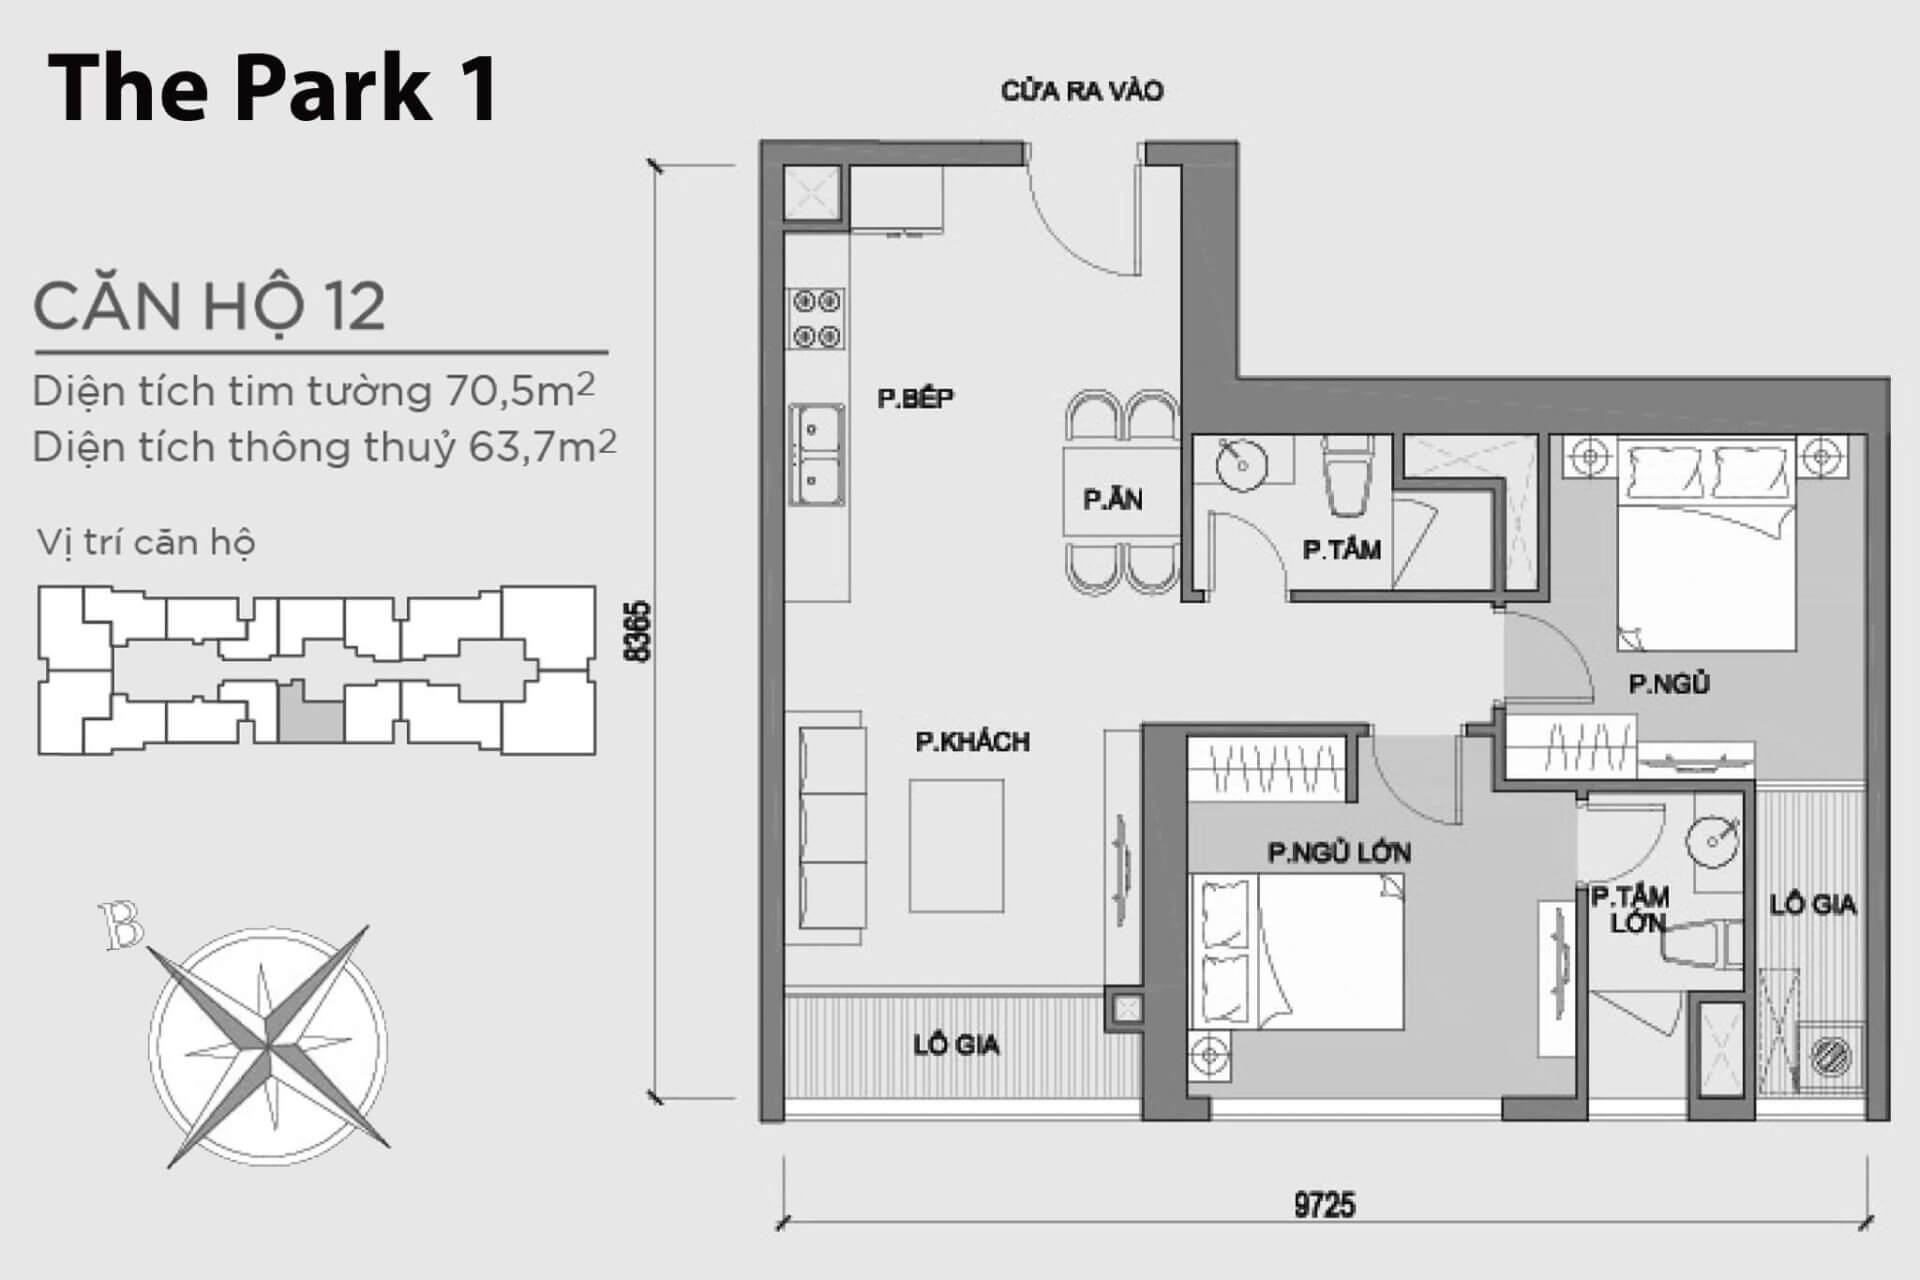 mặt bằng layout căn hộ số 12 Park 1 Vinhomes Central Park